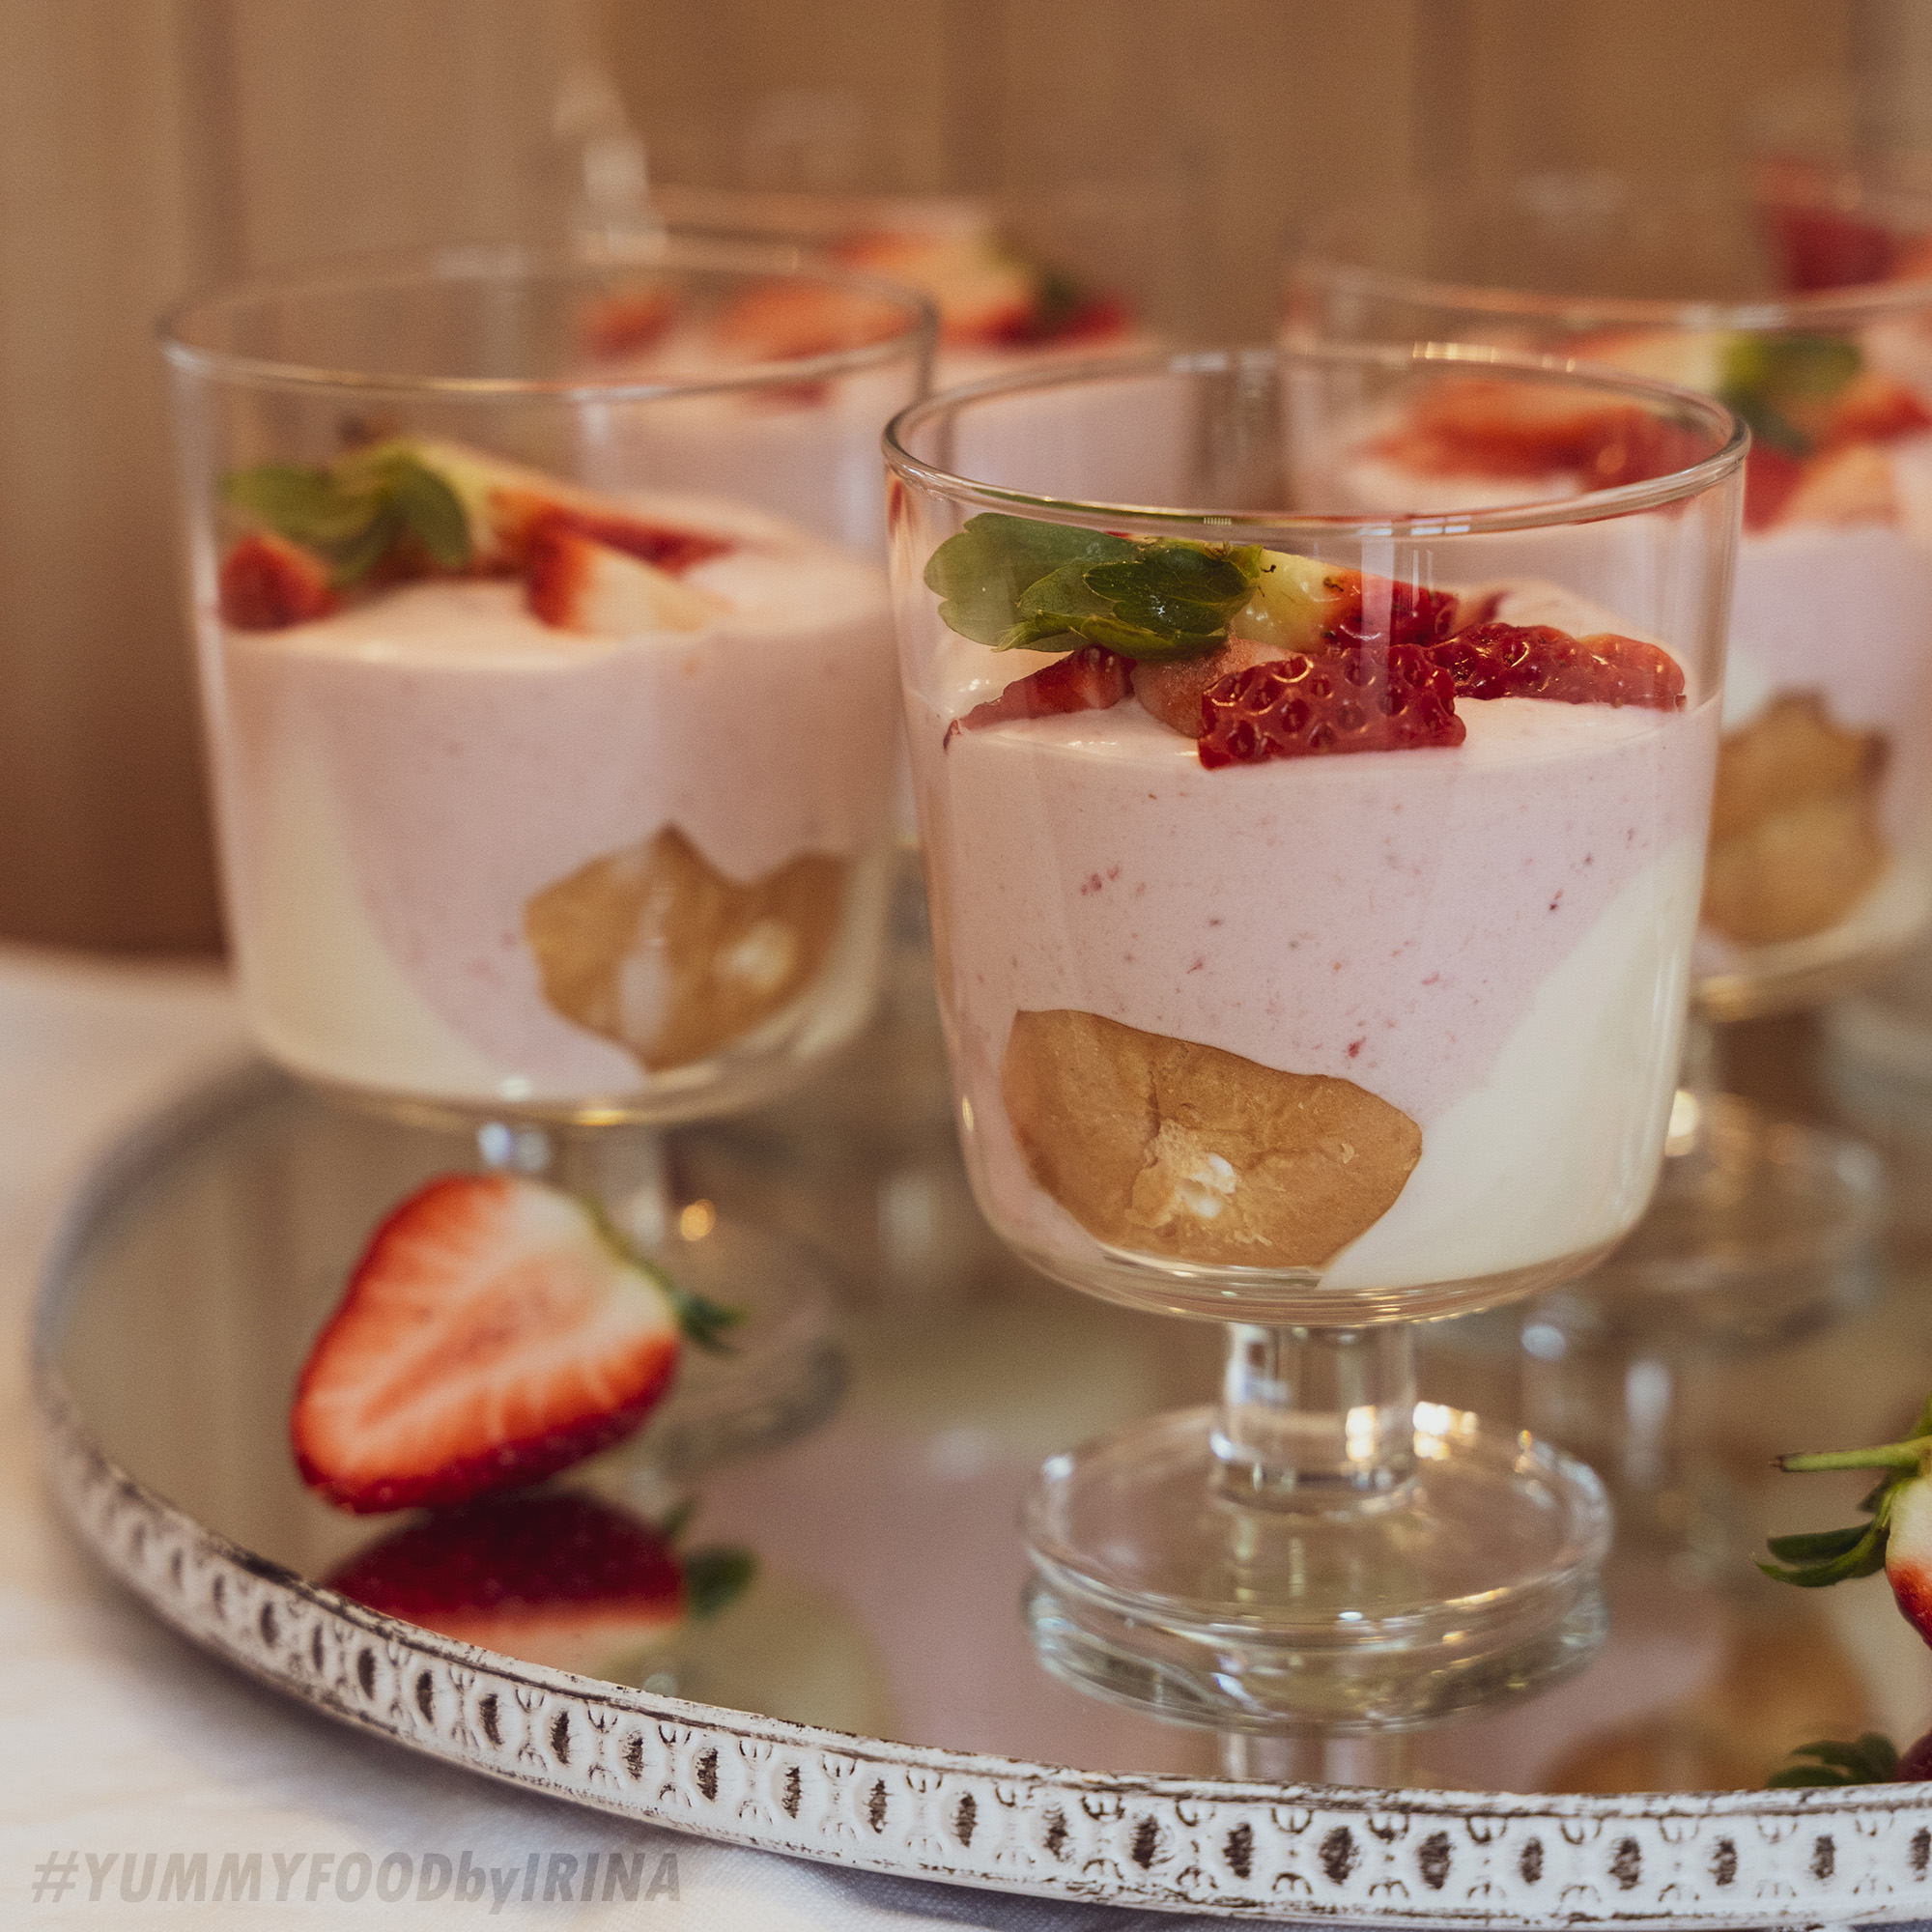 Erdbeer-Windbeutel-Dessert - YUMMYFOODbyirina